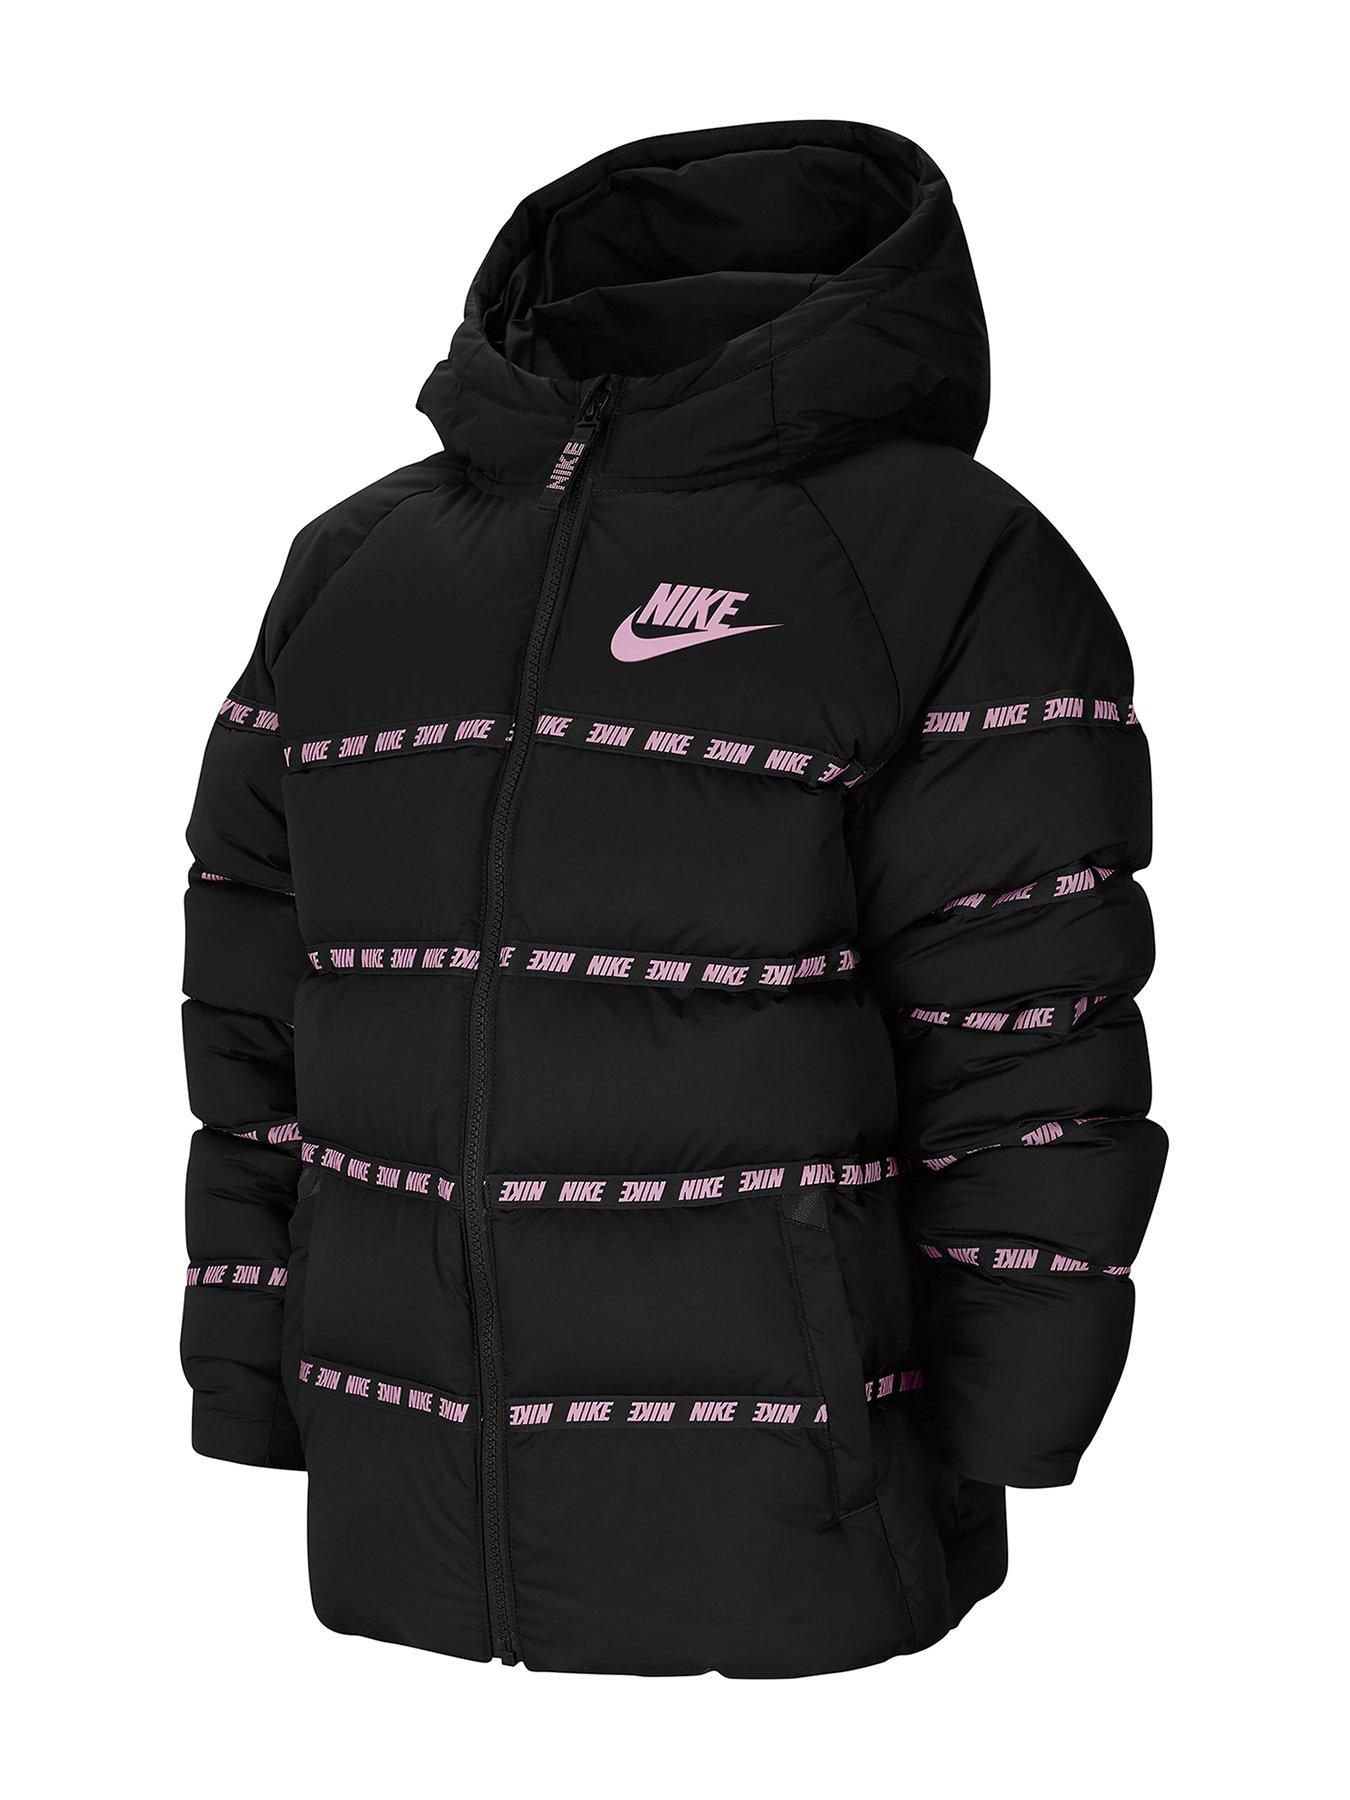 black pink nike jacket